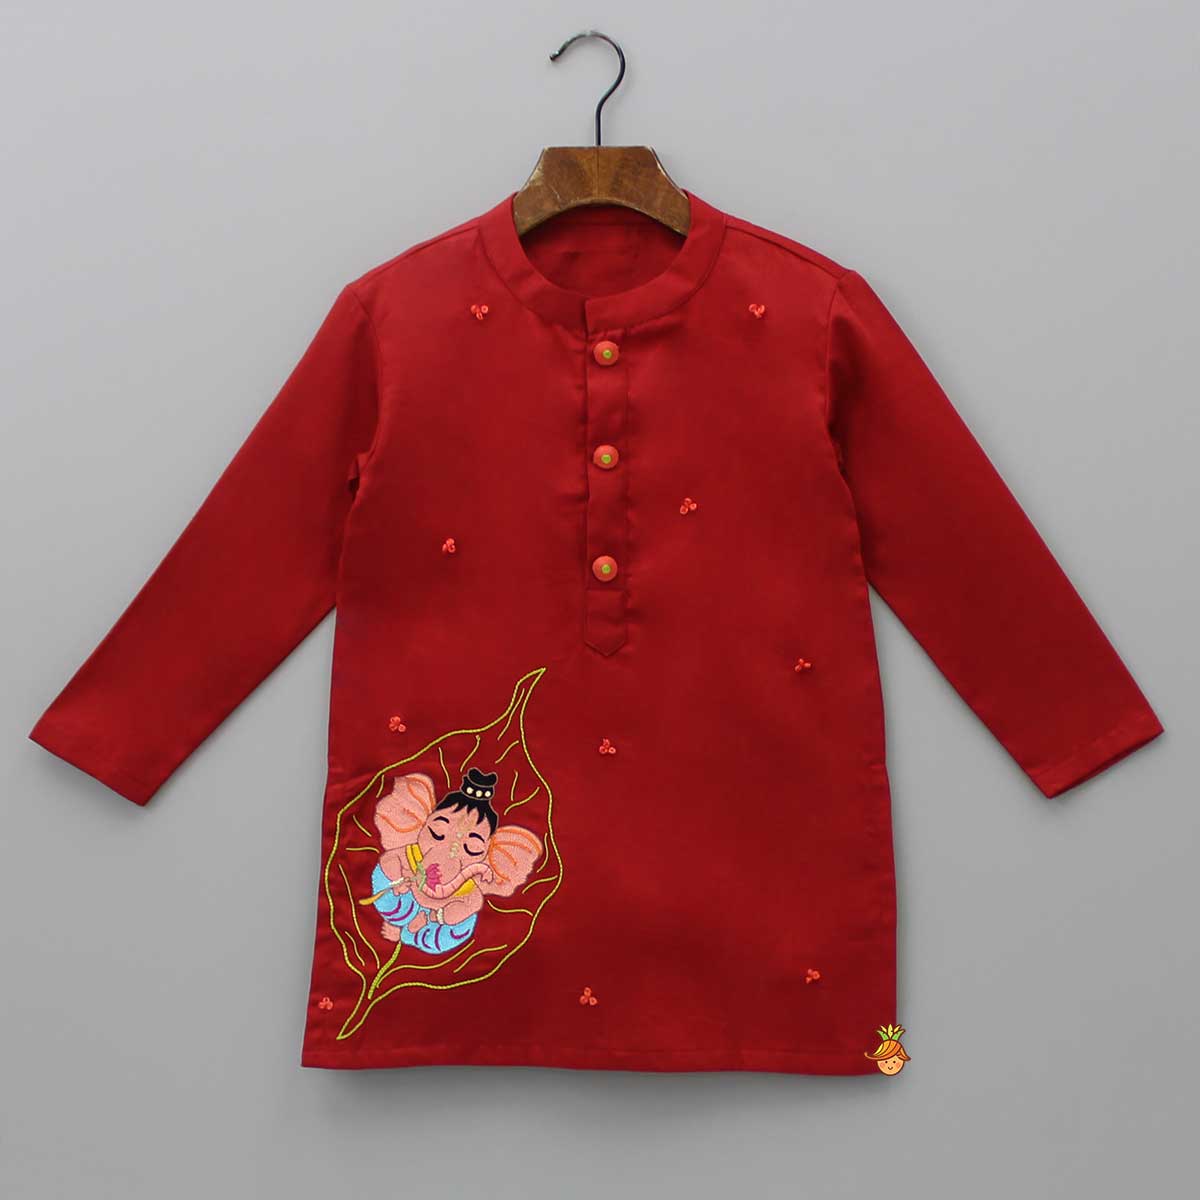 Ganesh Thread Embroidered Red Kurta And White Pyjama